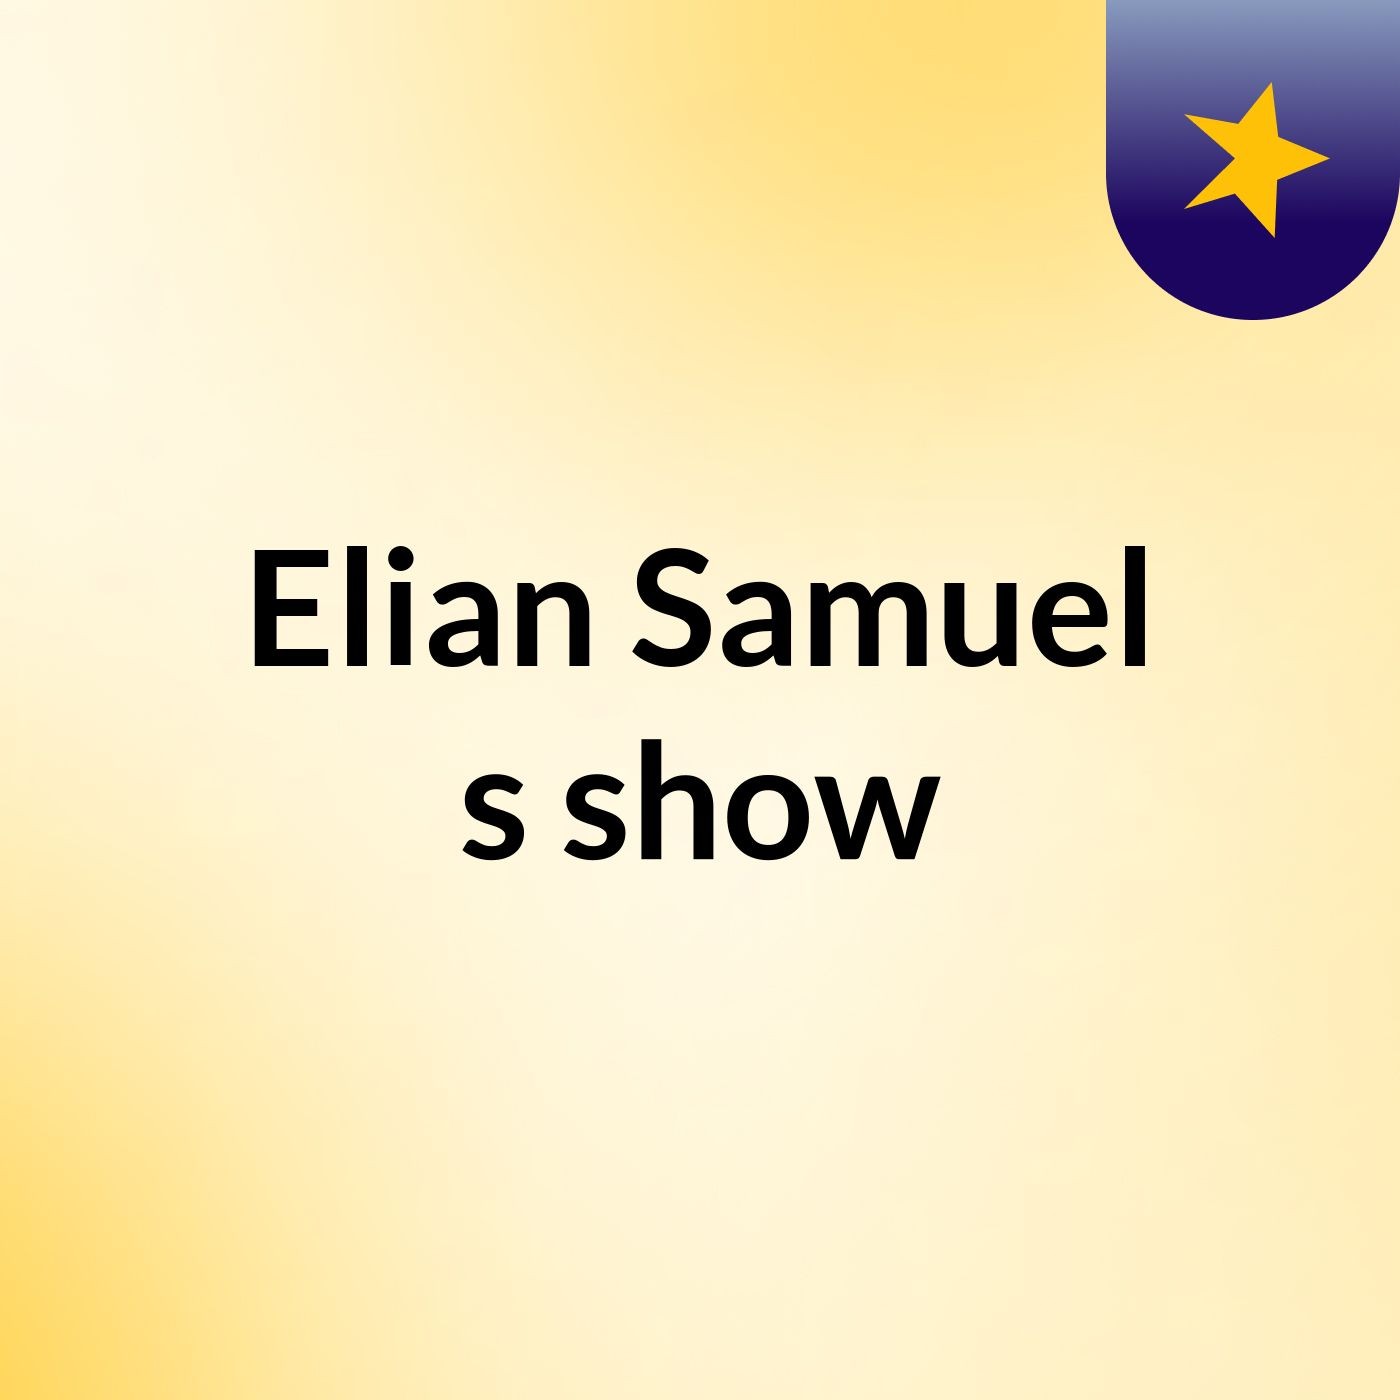 Elian Samuel's show